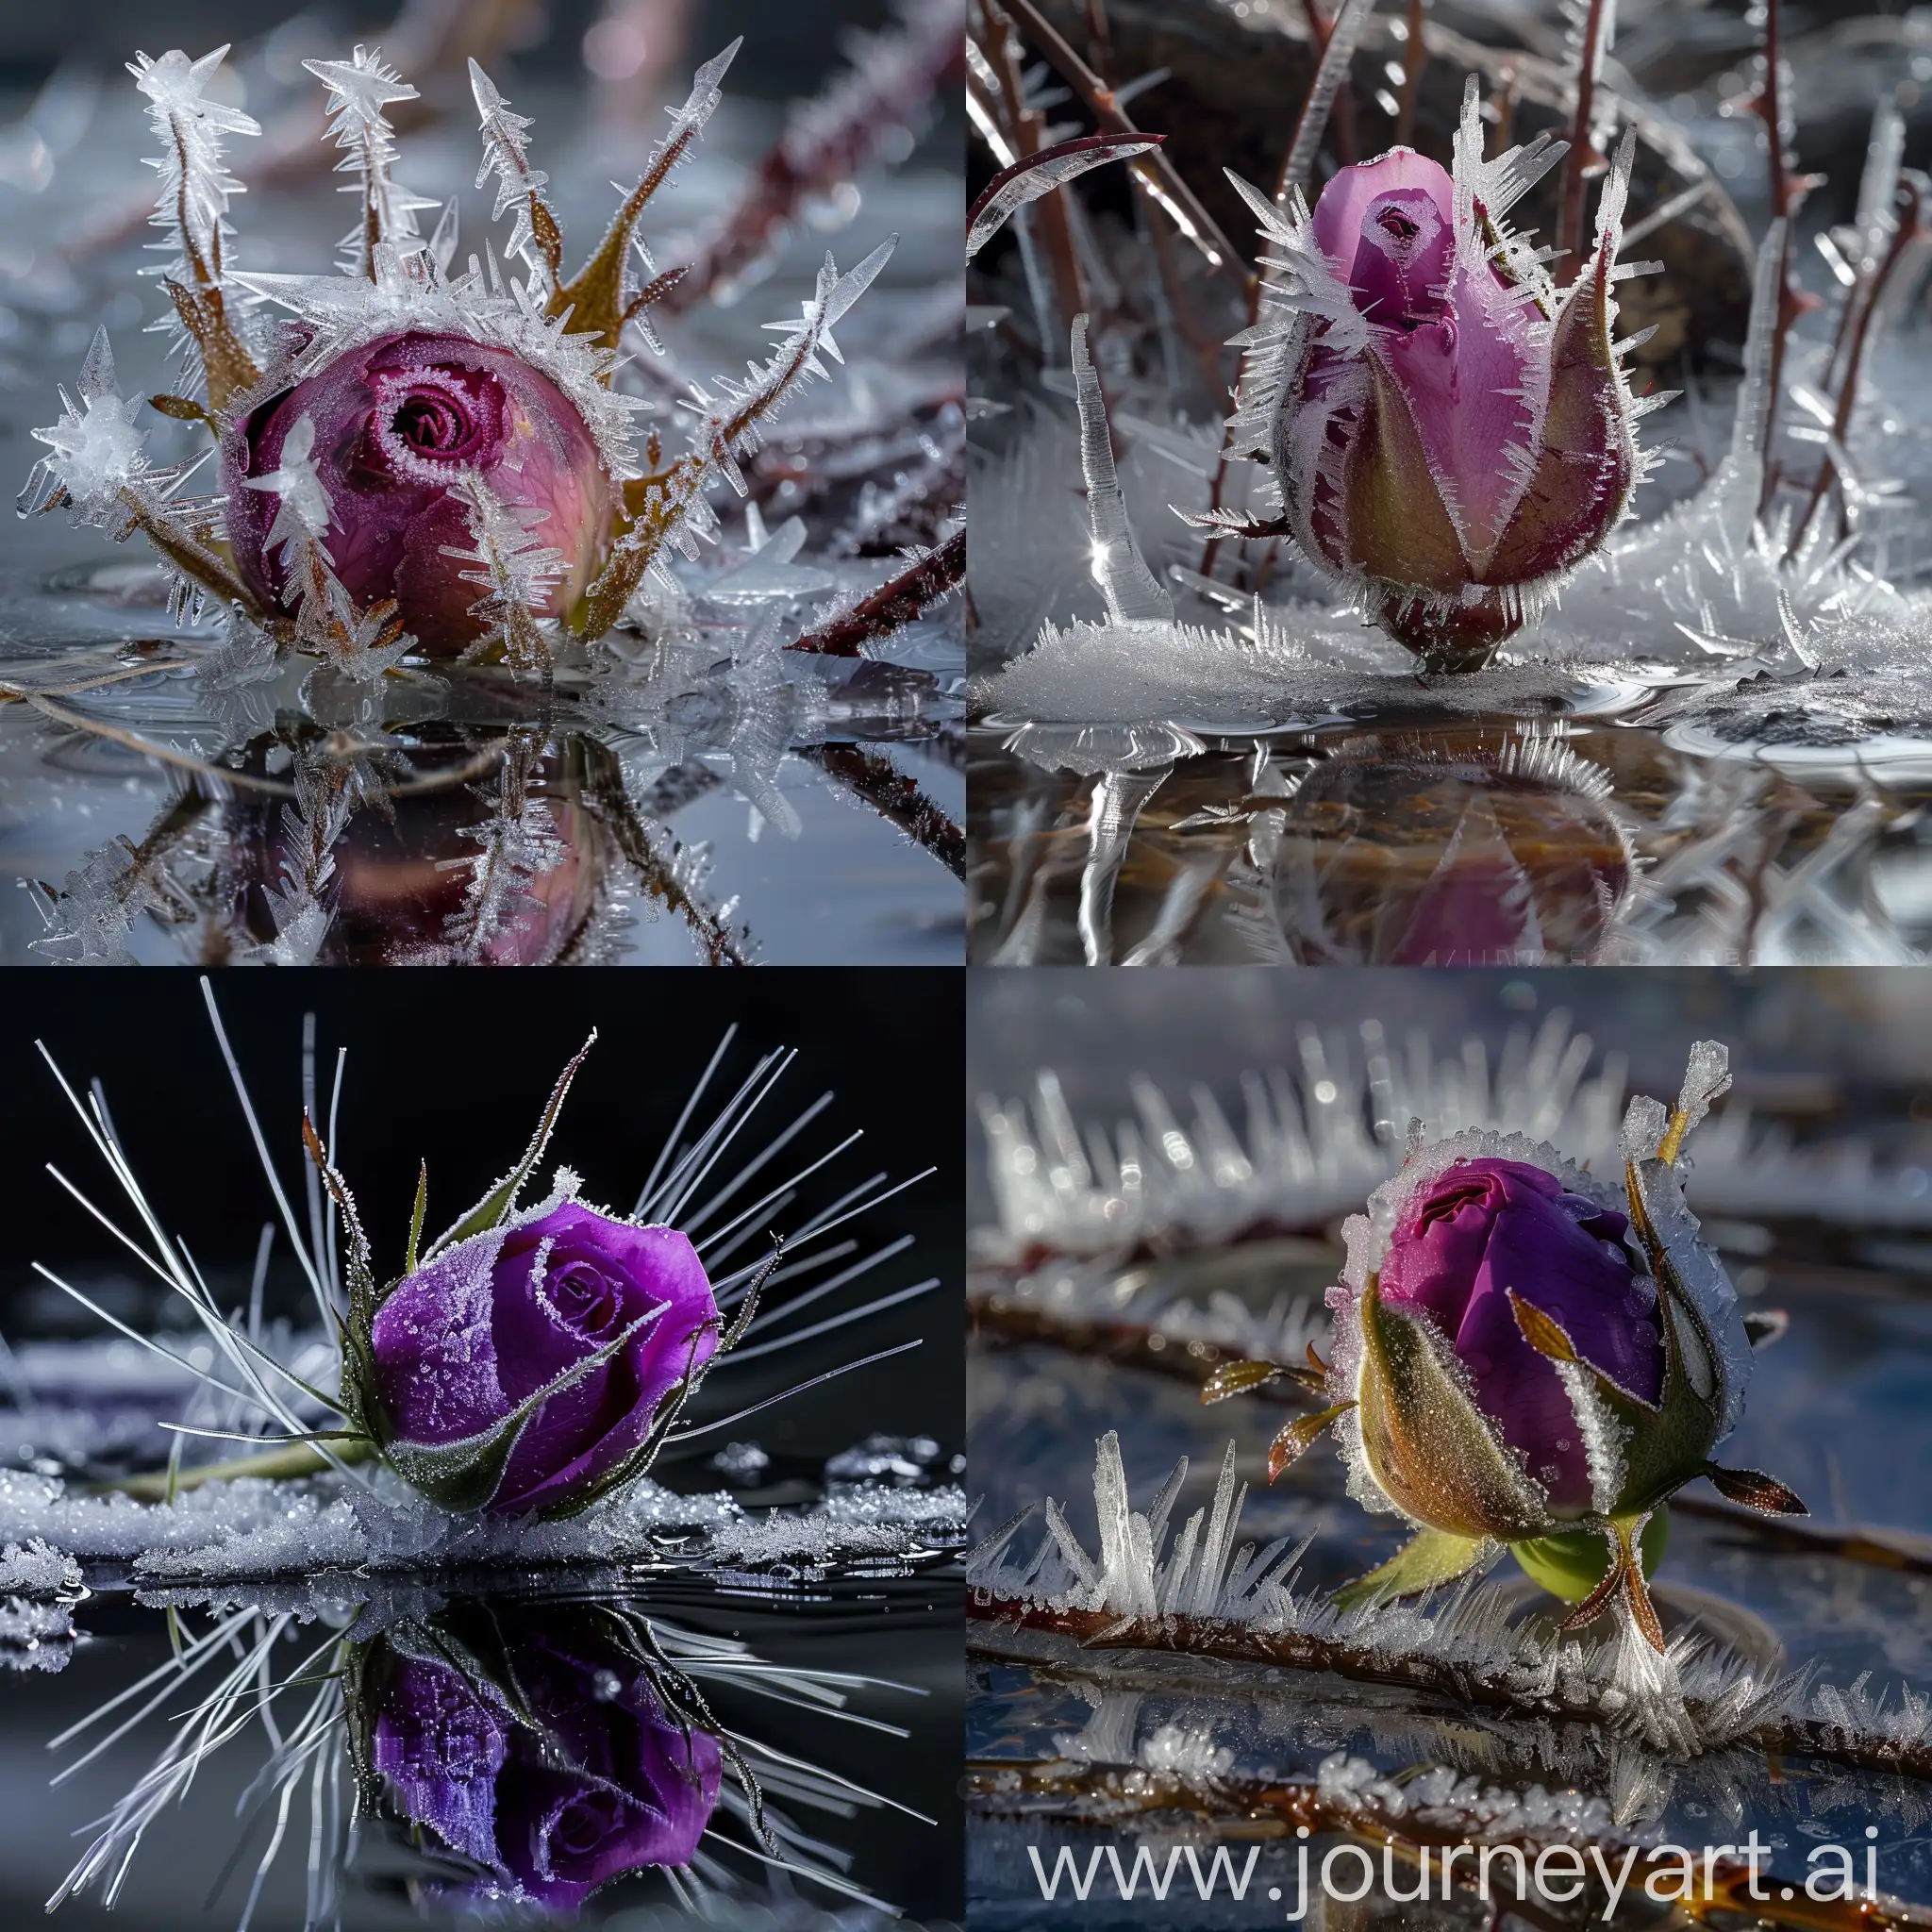 Макро ,красивый фиолетовый бутон розы весь в длинных острых фрактальных кристаллах льда, отражается в талой воде  ,потаевший снег,профессиональное фото много мелких деталей,высокое качество, 4k, высокая детализация